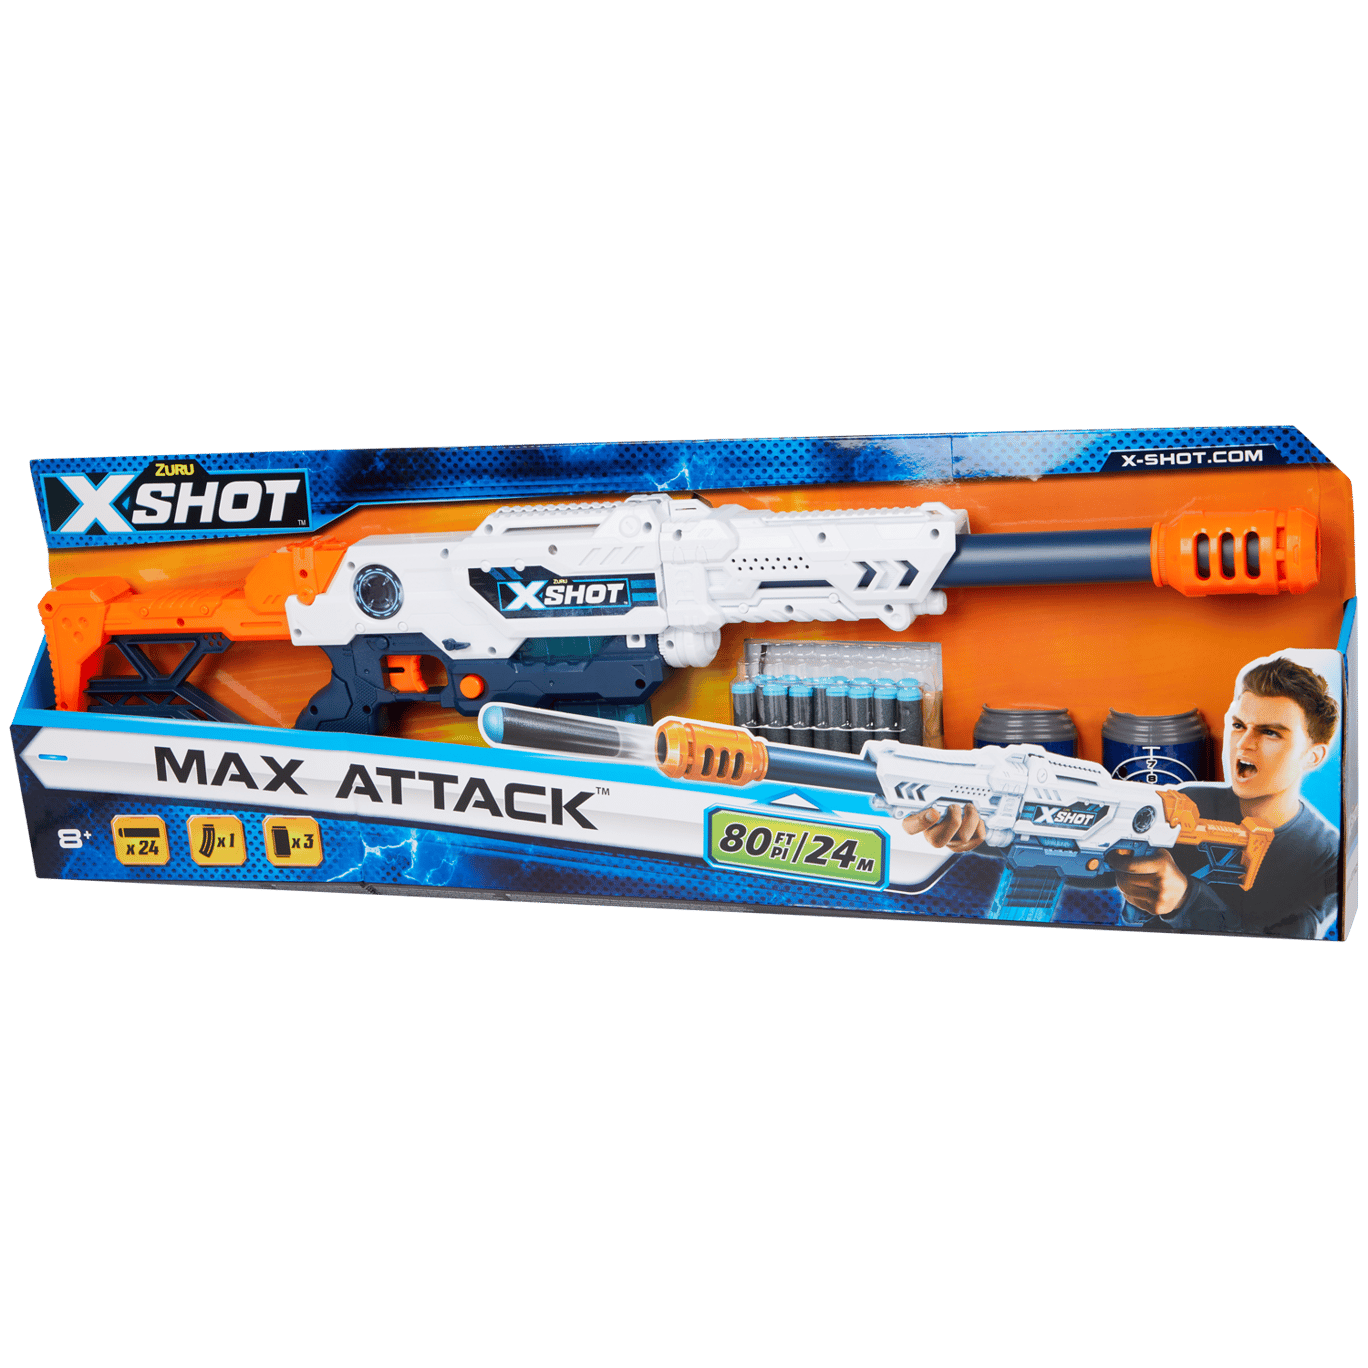 Permanent catalogus aantrekken Zuru X-shot dartgeweer Max Attack | Action.com